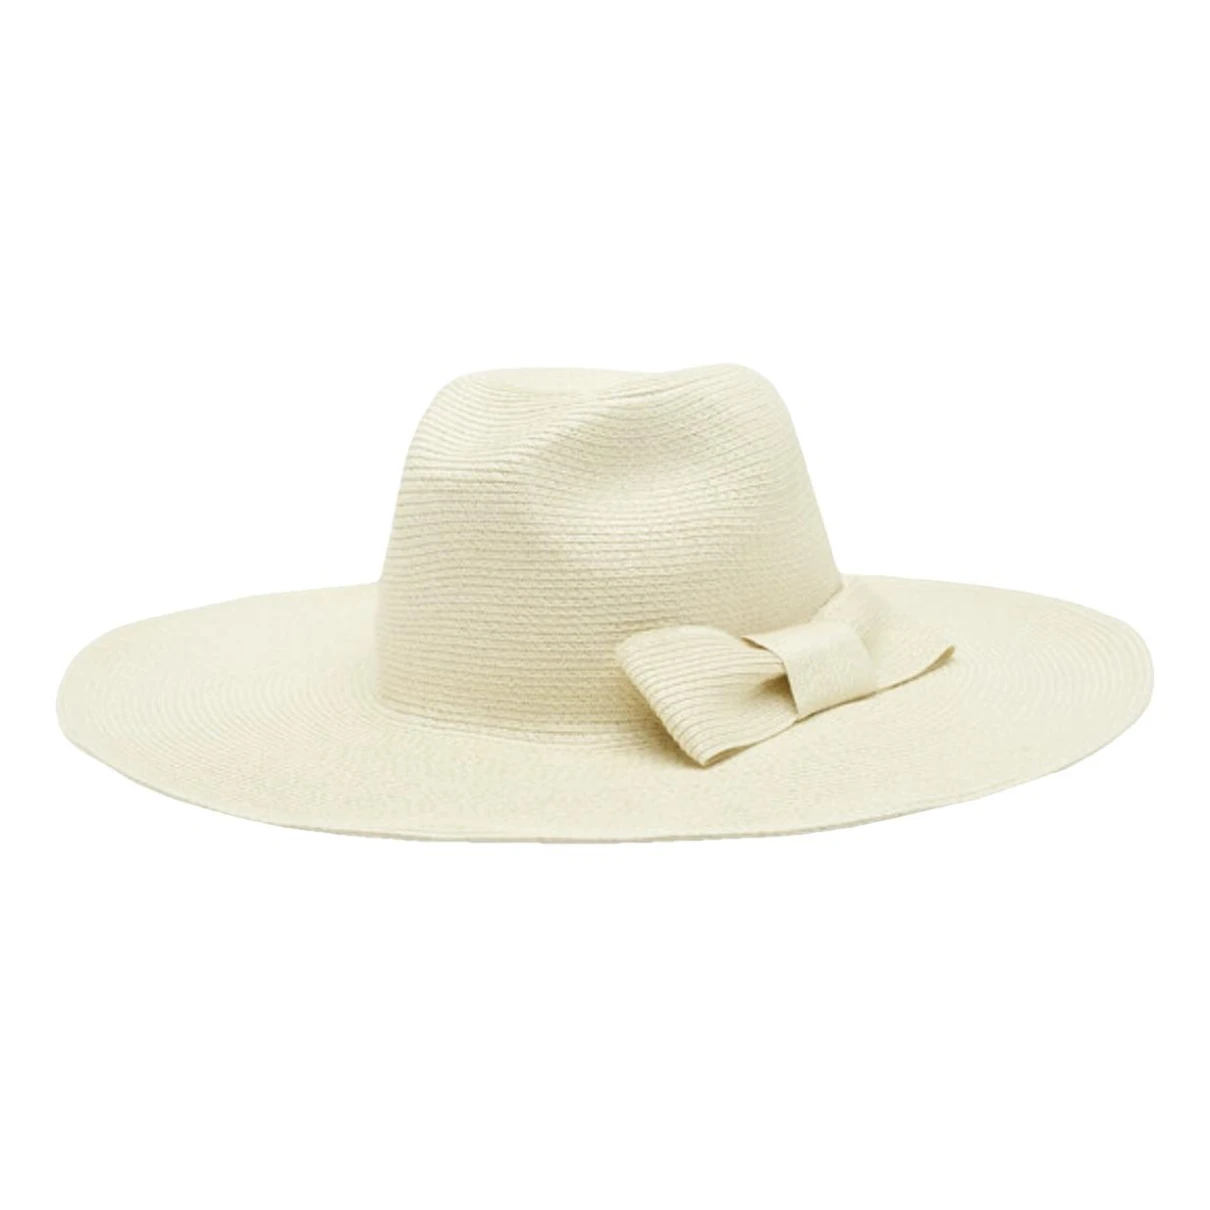 accessories Max Mara hats for Female Wicker 57 cm. Used condition